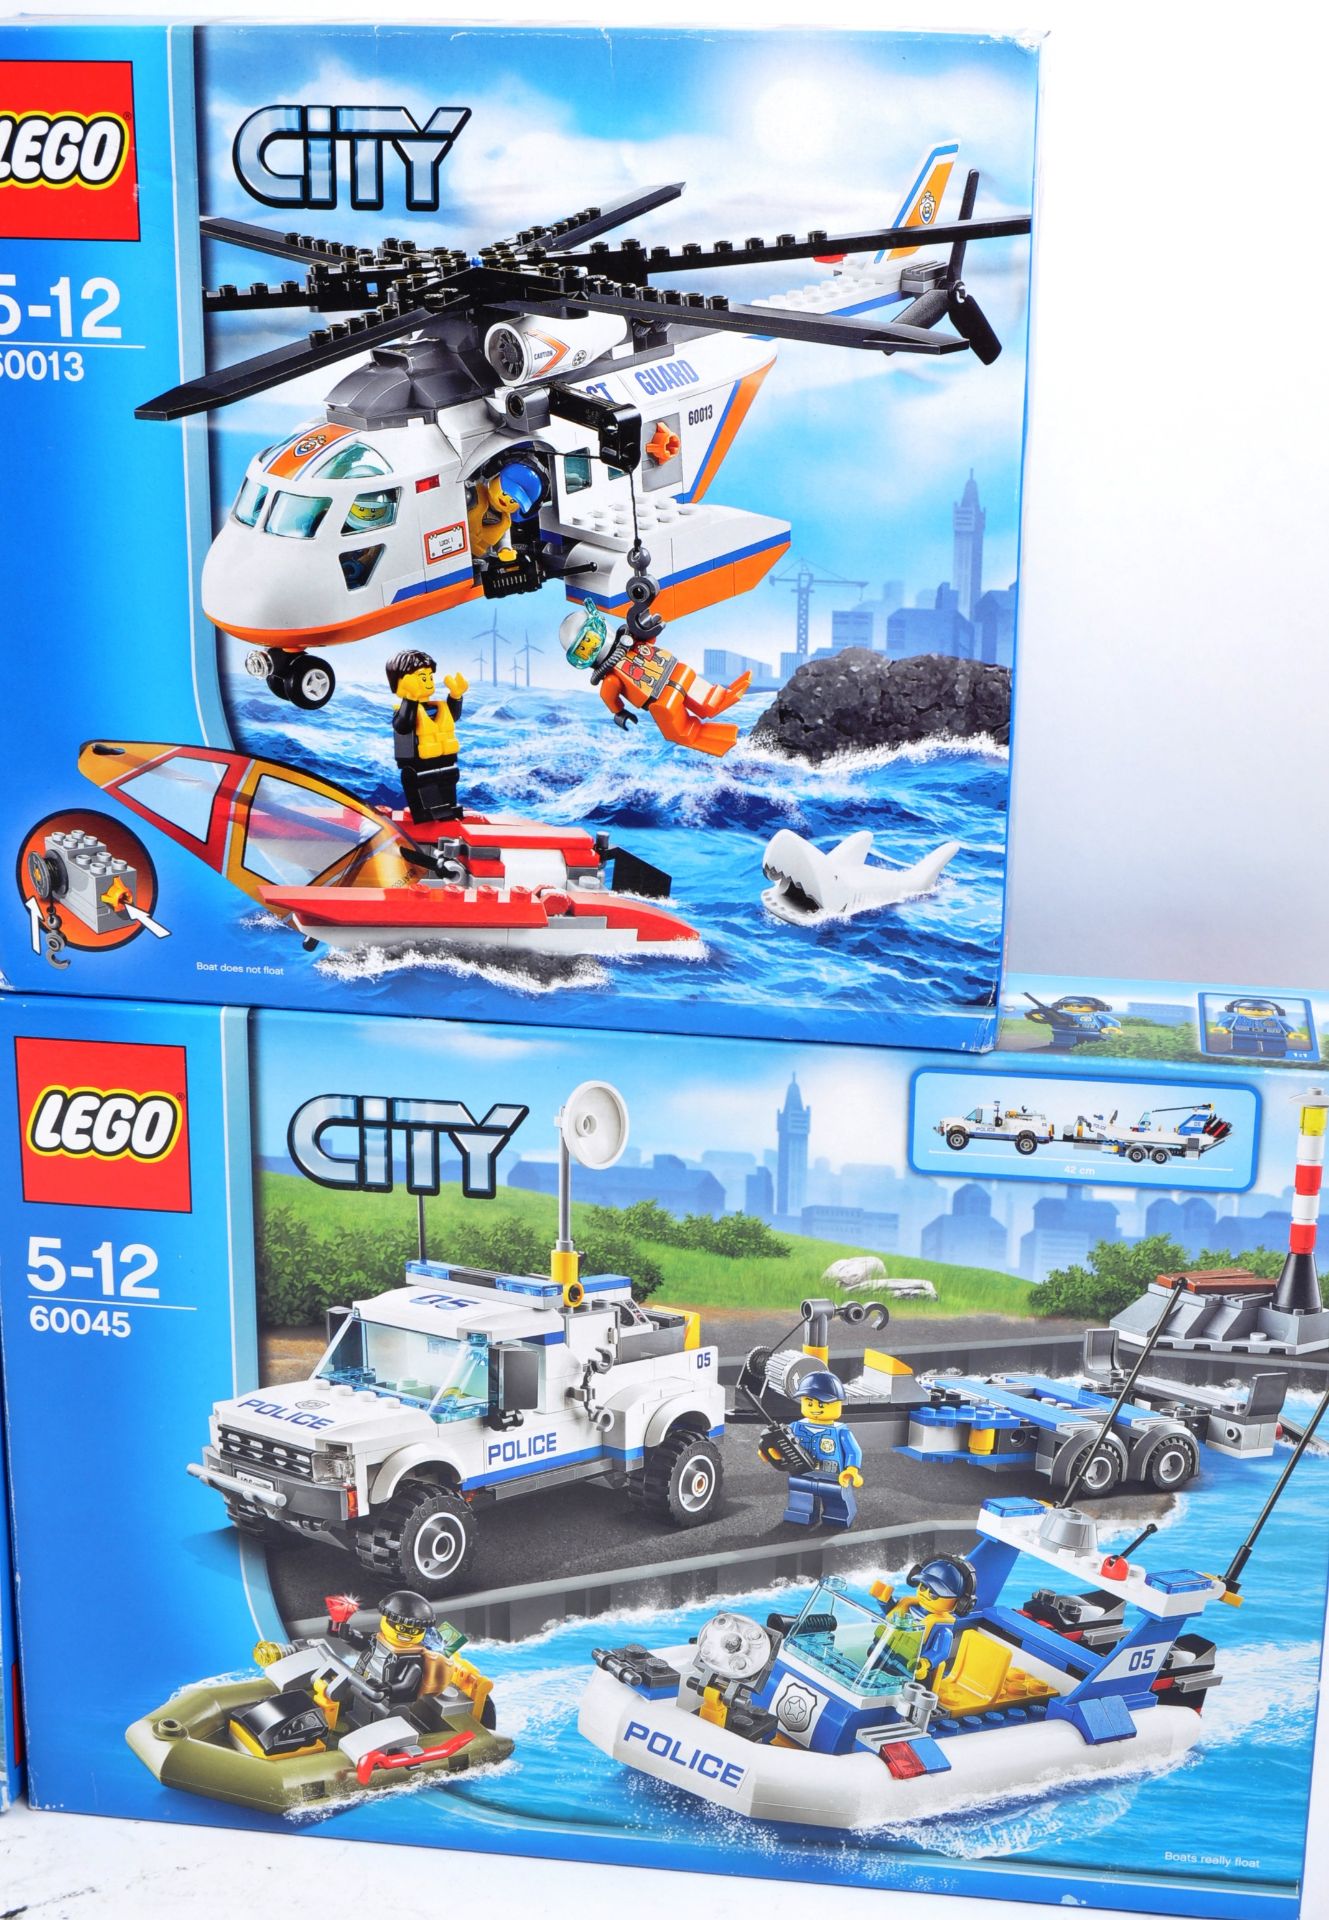 LEGO SETS - LEGO CITY - Image 2 of 5